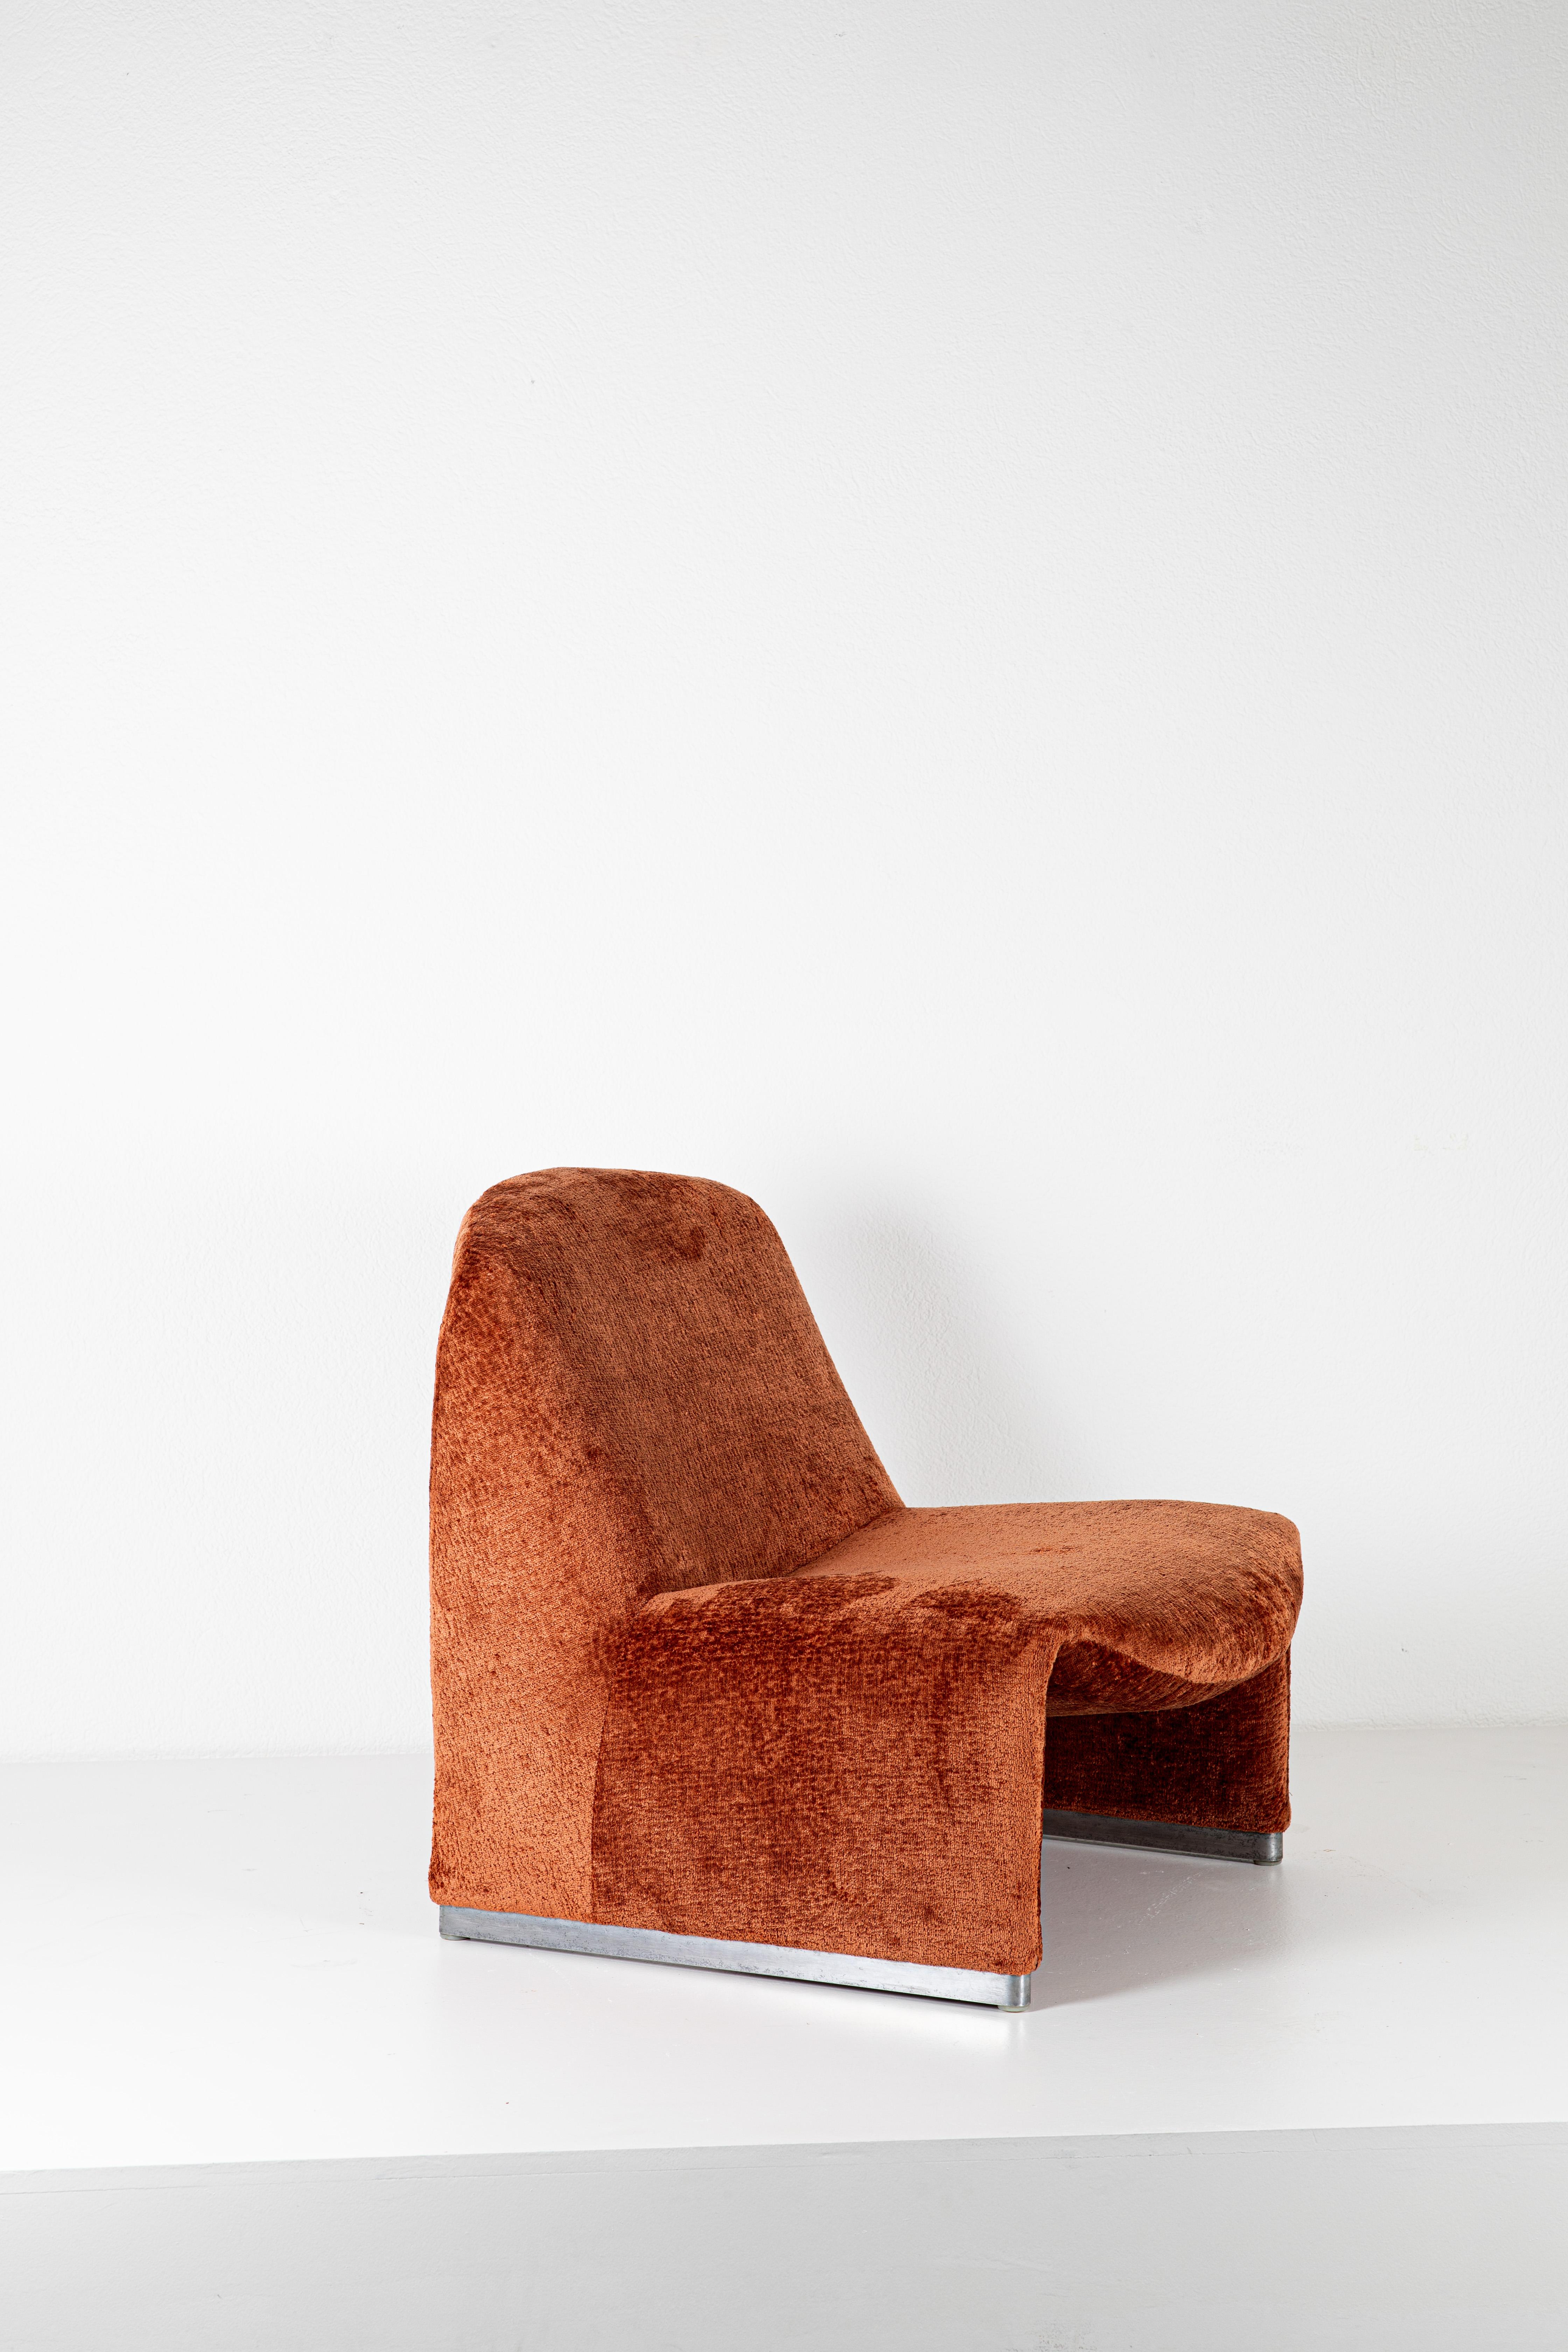 Der Sessel Alky ist ein Entwurf von Giancarlo Piretti, einem italienischen Industriedesigner, der für seine innovativen und funktionalen Möbelentwürfe bekannt ist. Der Alky-Stuhl ist eine seiner bemerkenswerten Kreationen und ist für seine